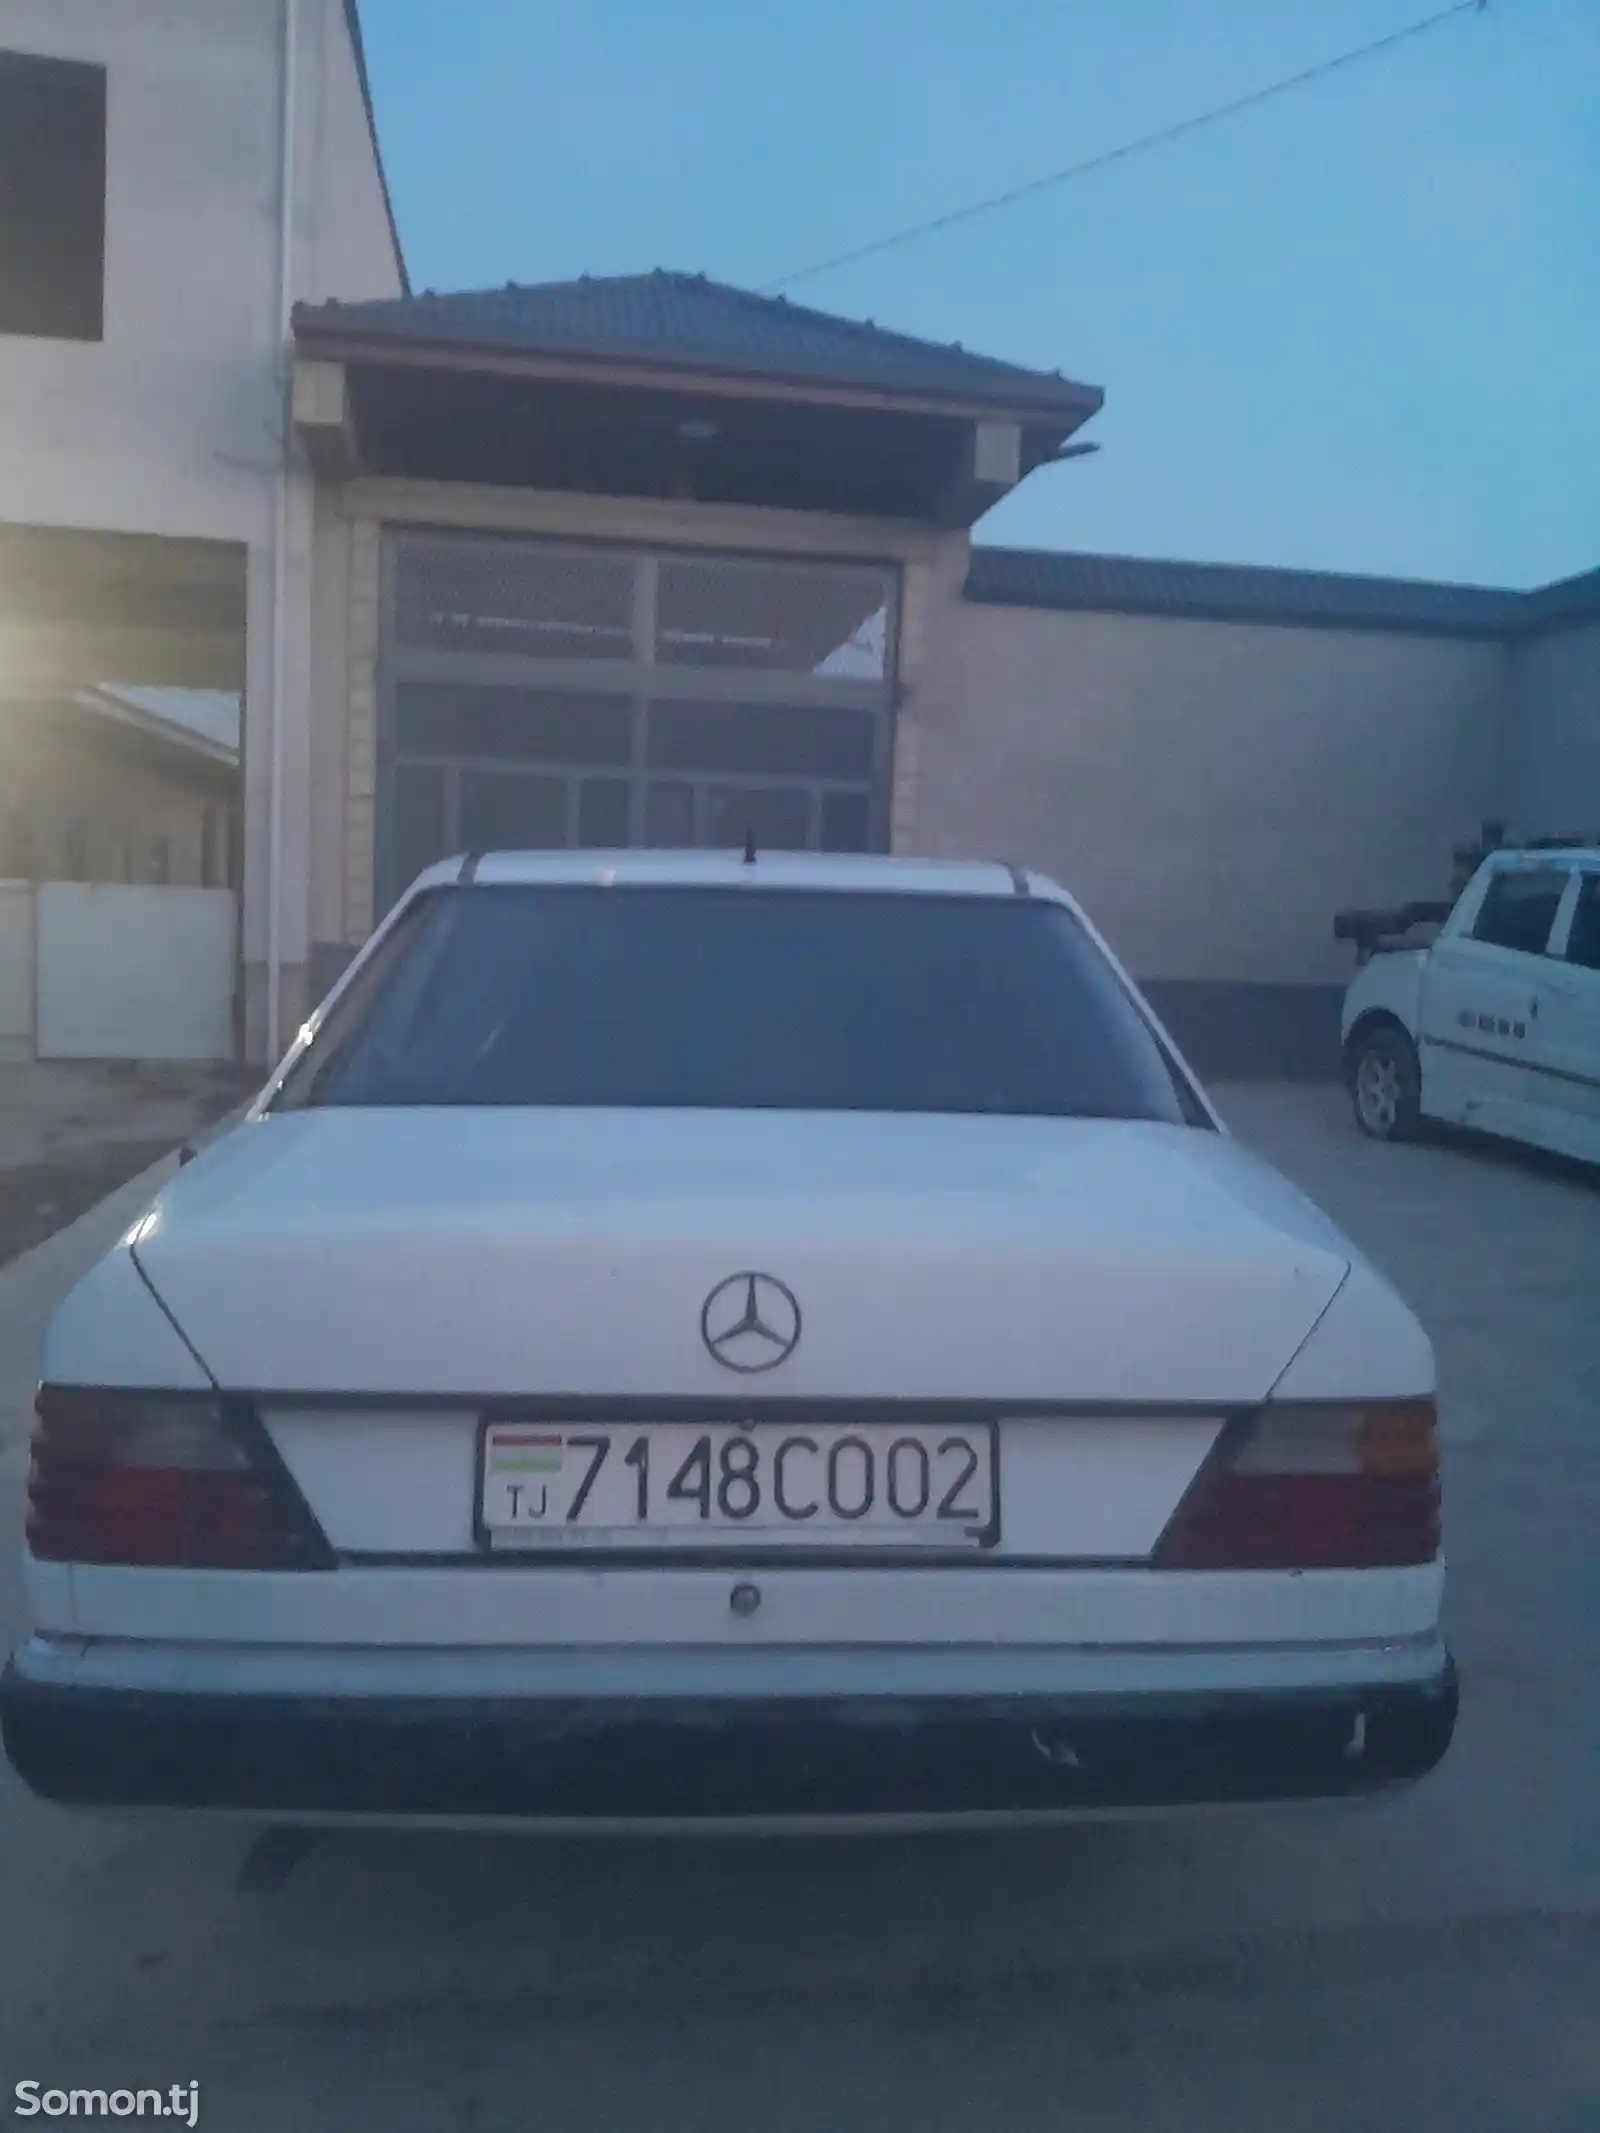 Mercedes-Benz W124, 1994-4